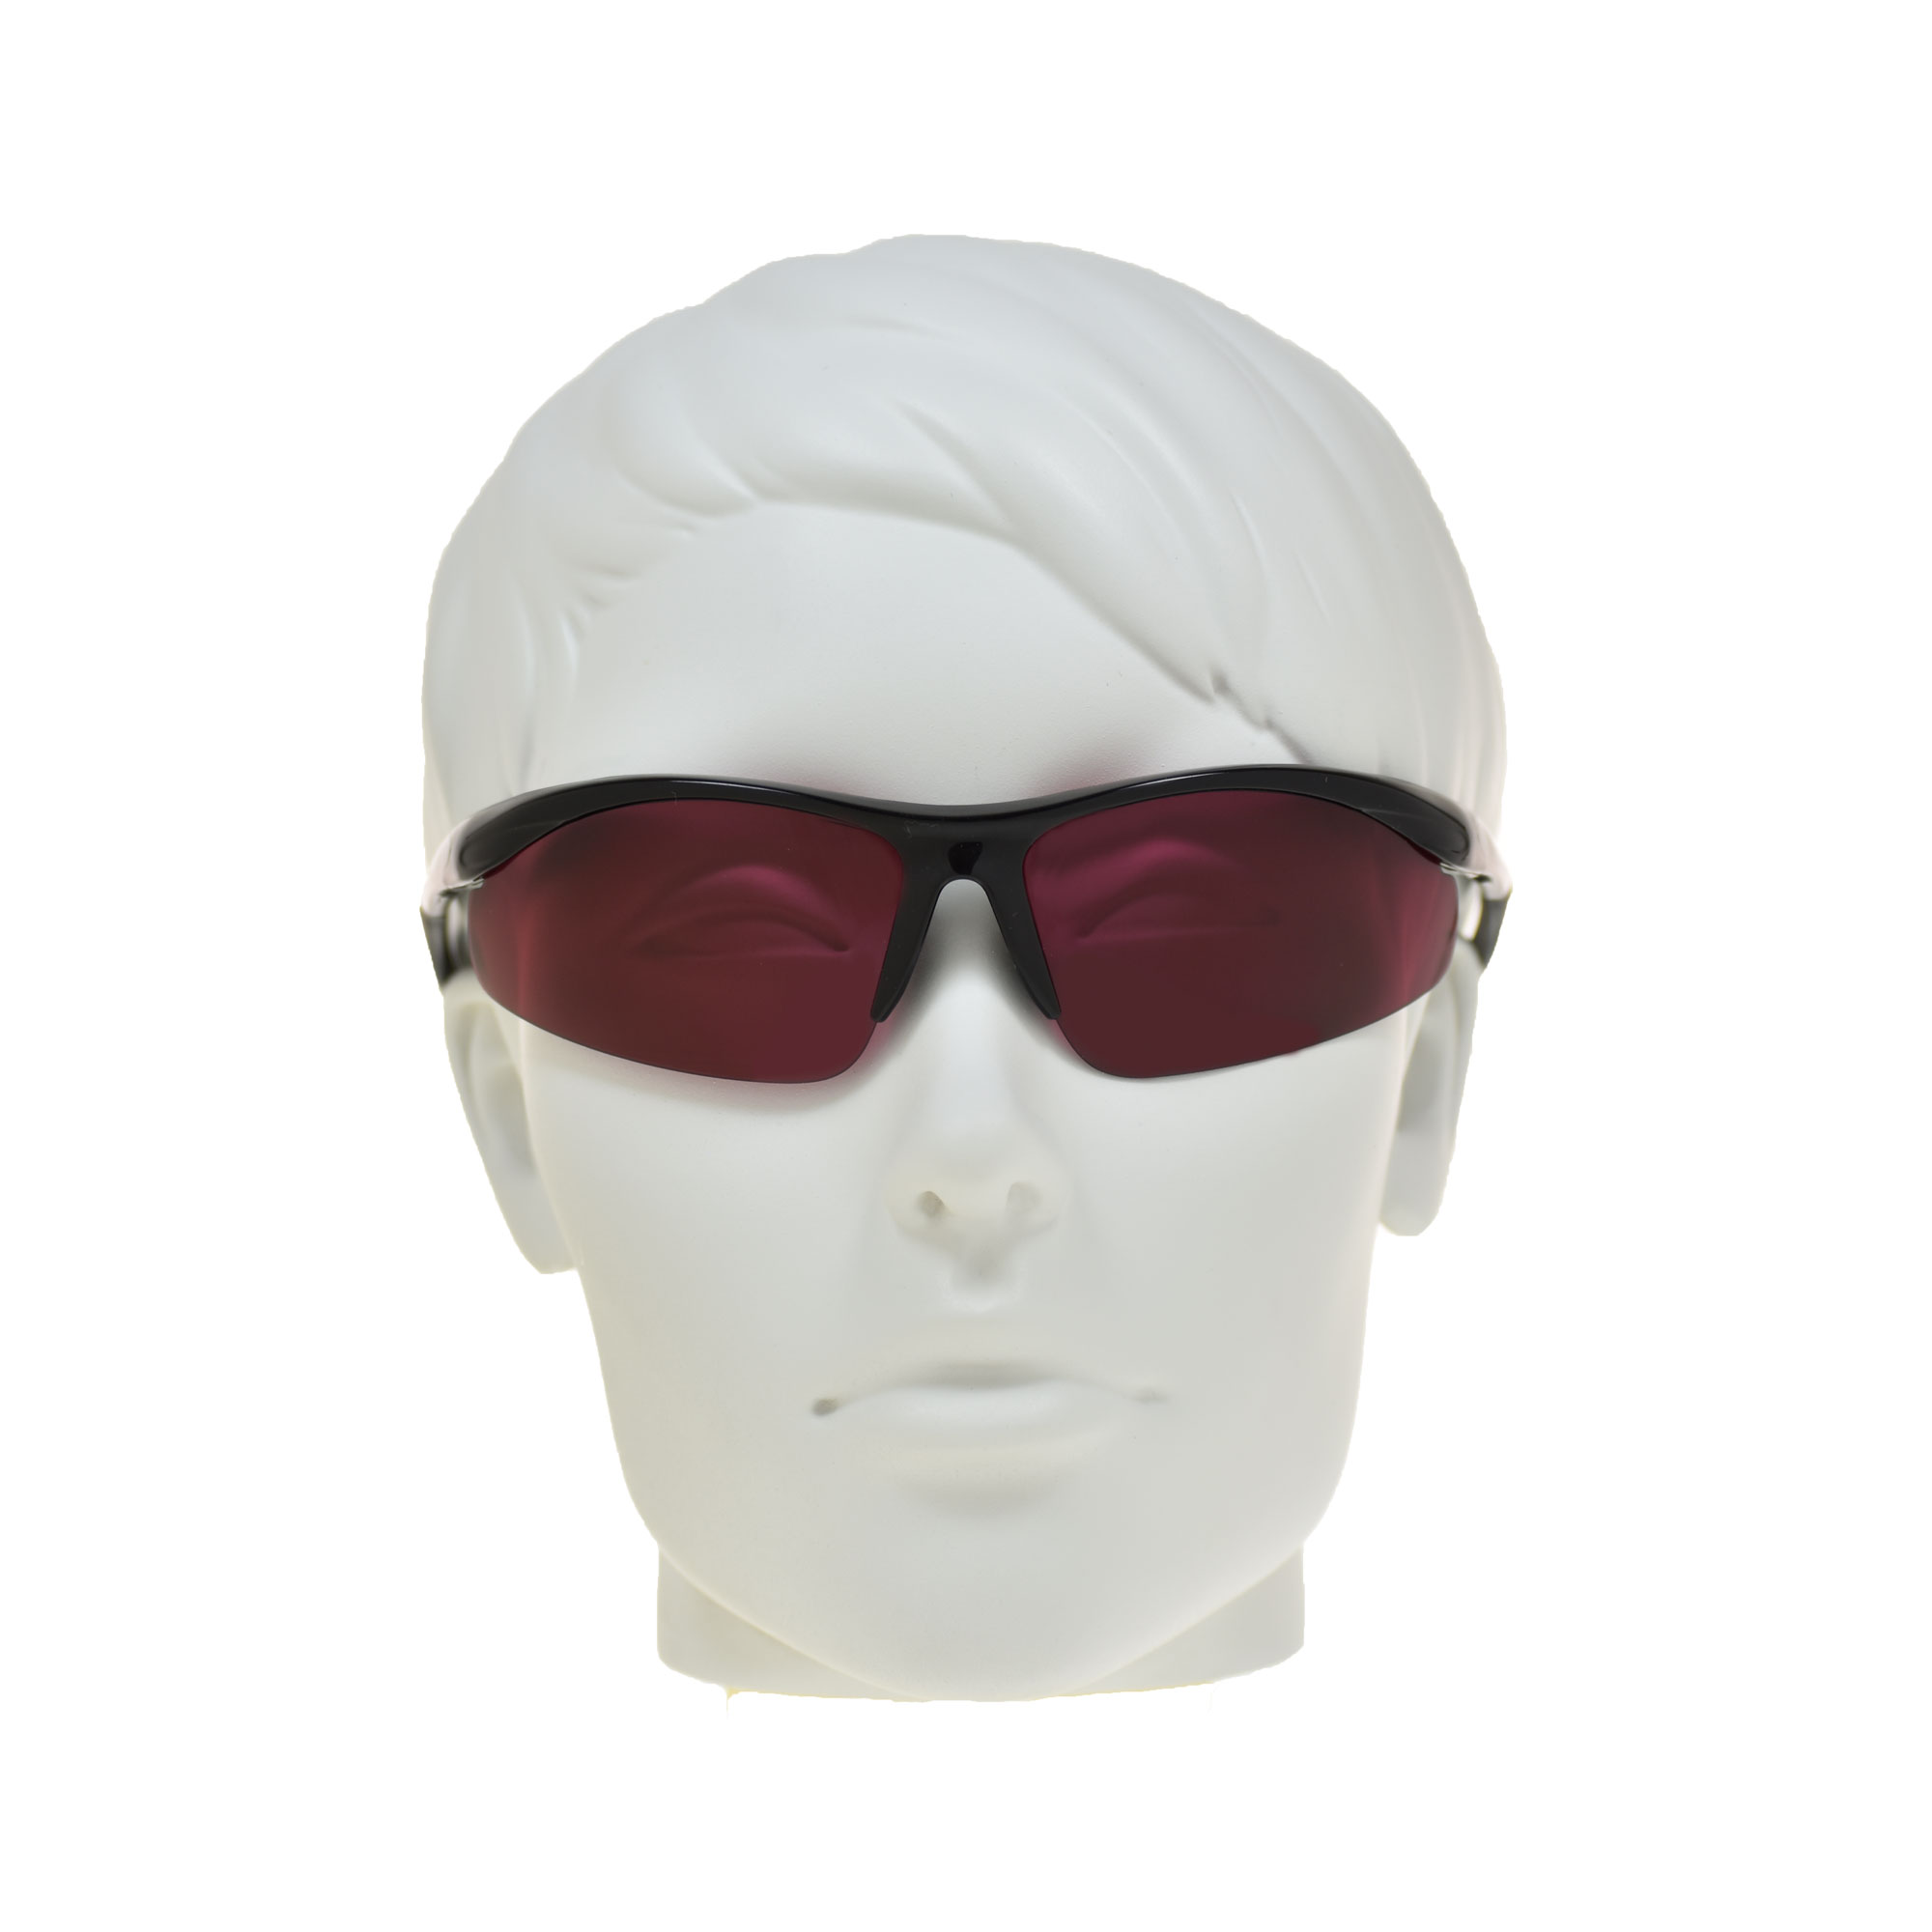 proSPORT Polarized Rose Semi Rimless Sunglasses Wrap Frame - image 4 of 4